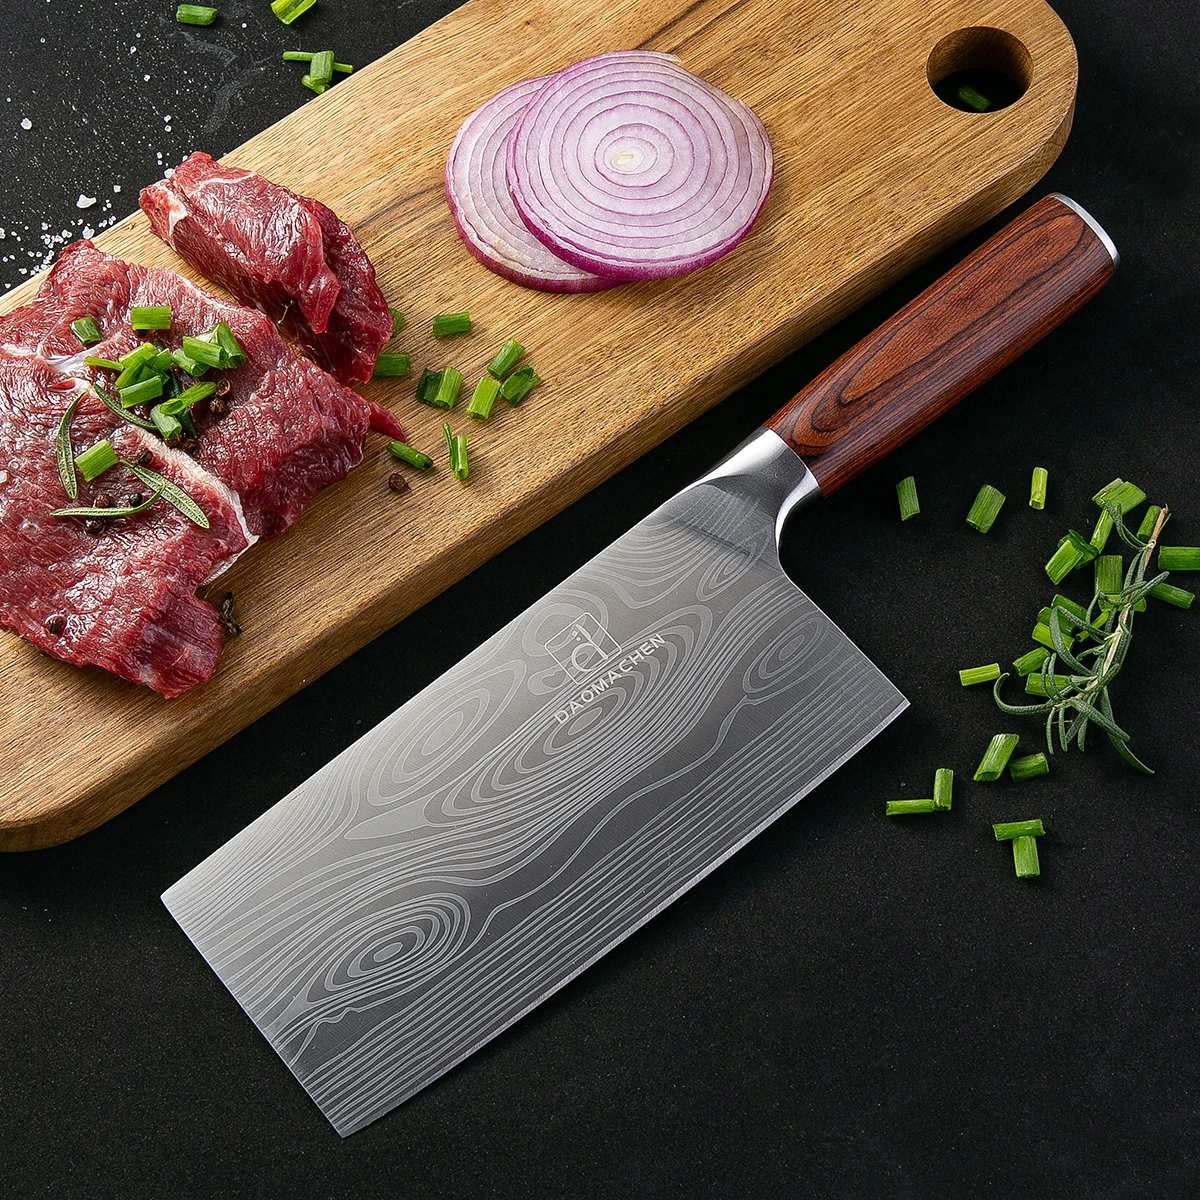 DAOMACHEN костяные ножи Профессиональный кухонный нож 7 дюймов 7CR17 имитация нержавеющей стали дамасский шлифовальный лазерный нож Santoku